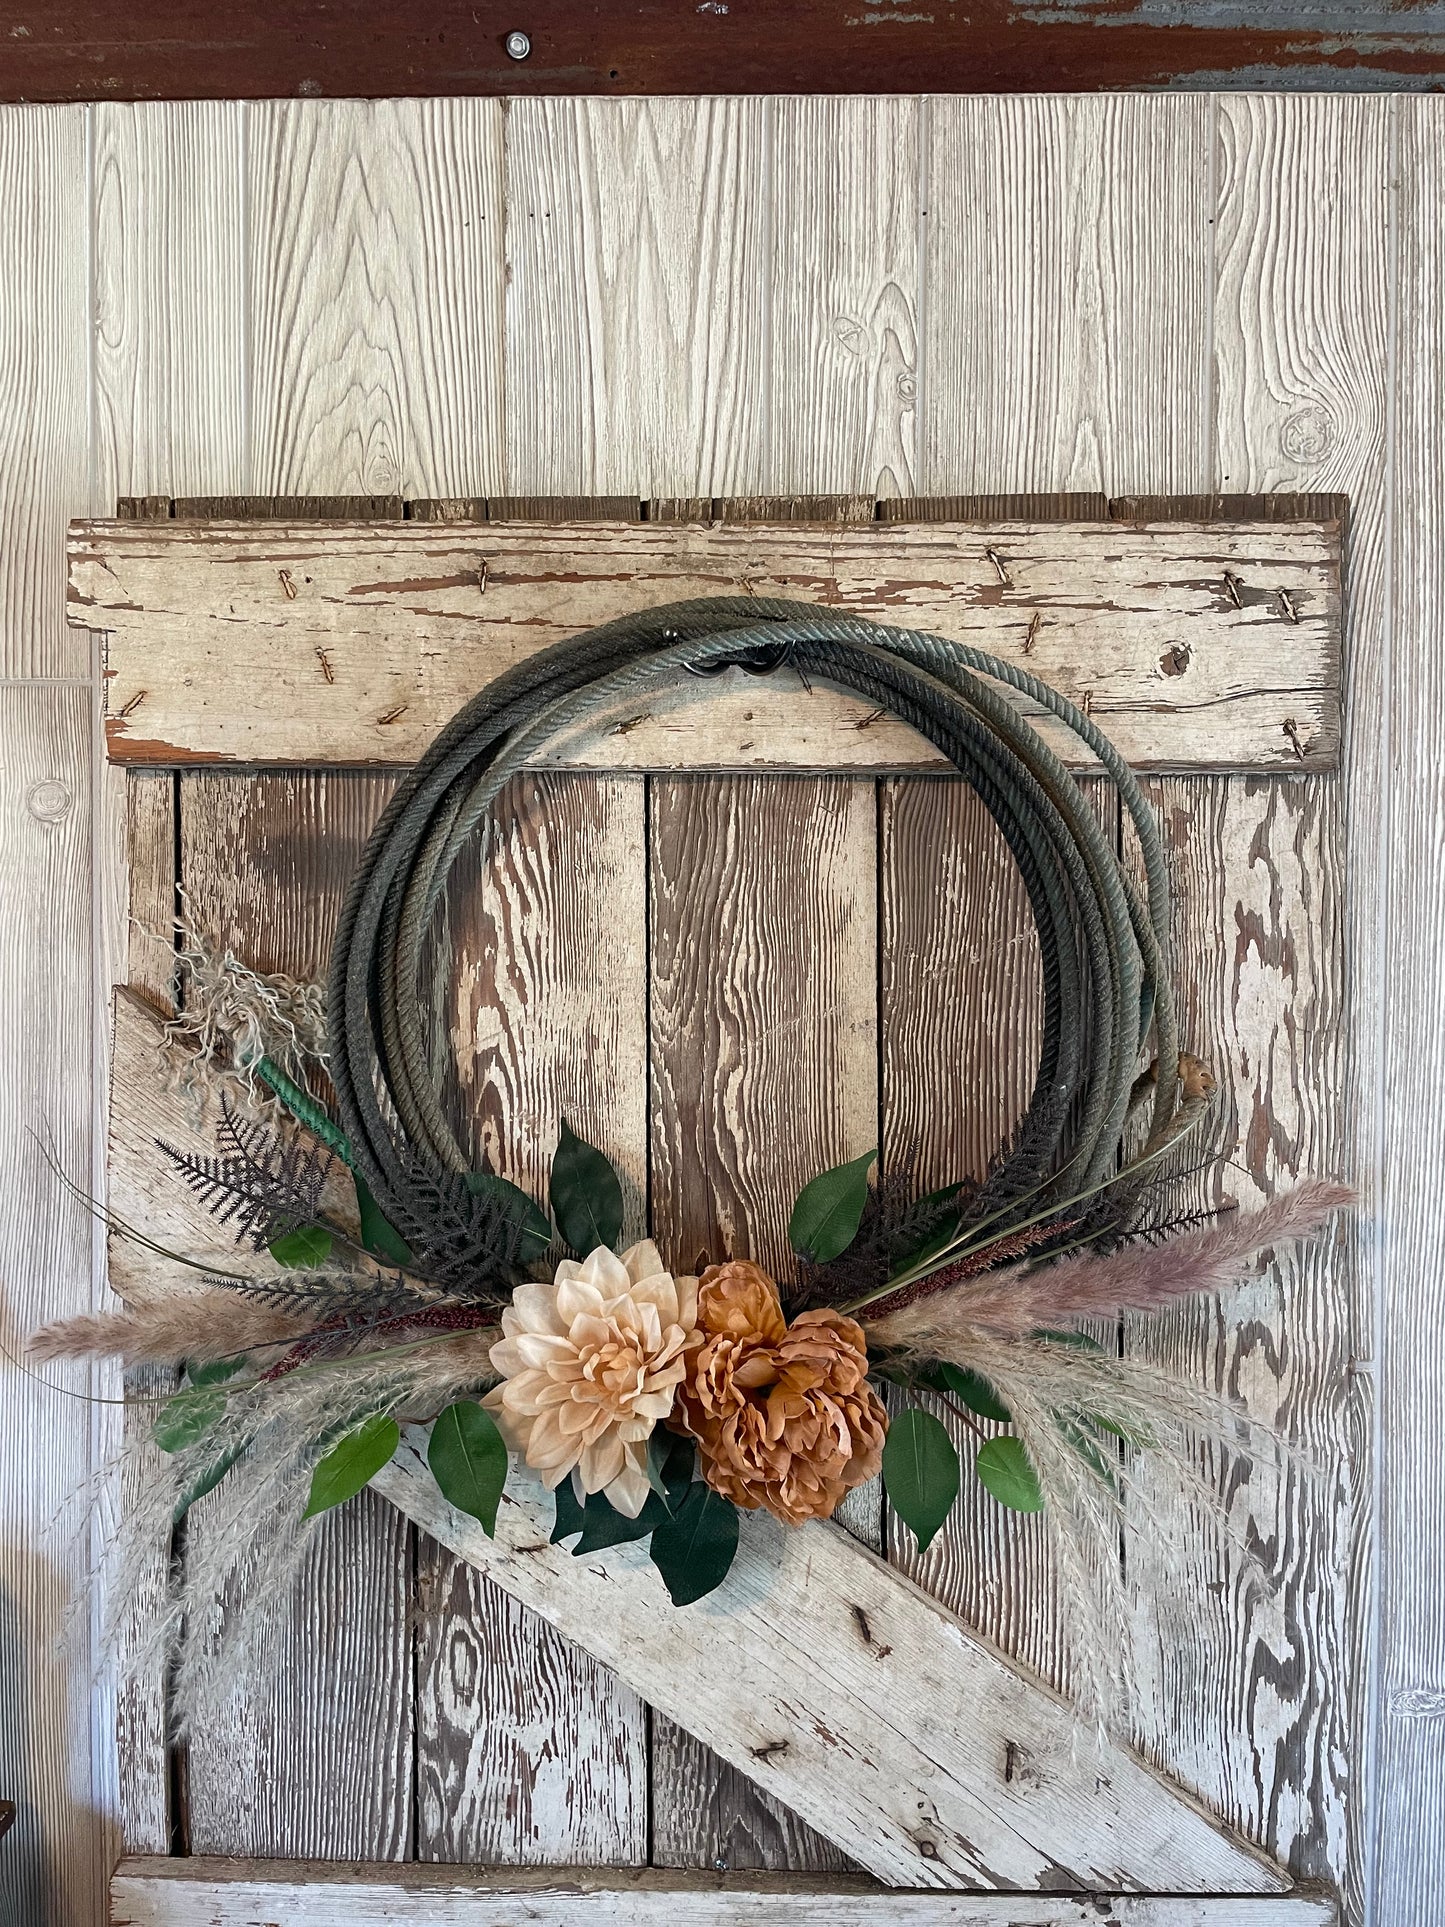 Rustic Western Lariat Rope Wreath